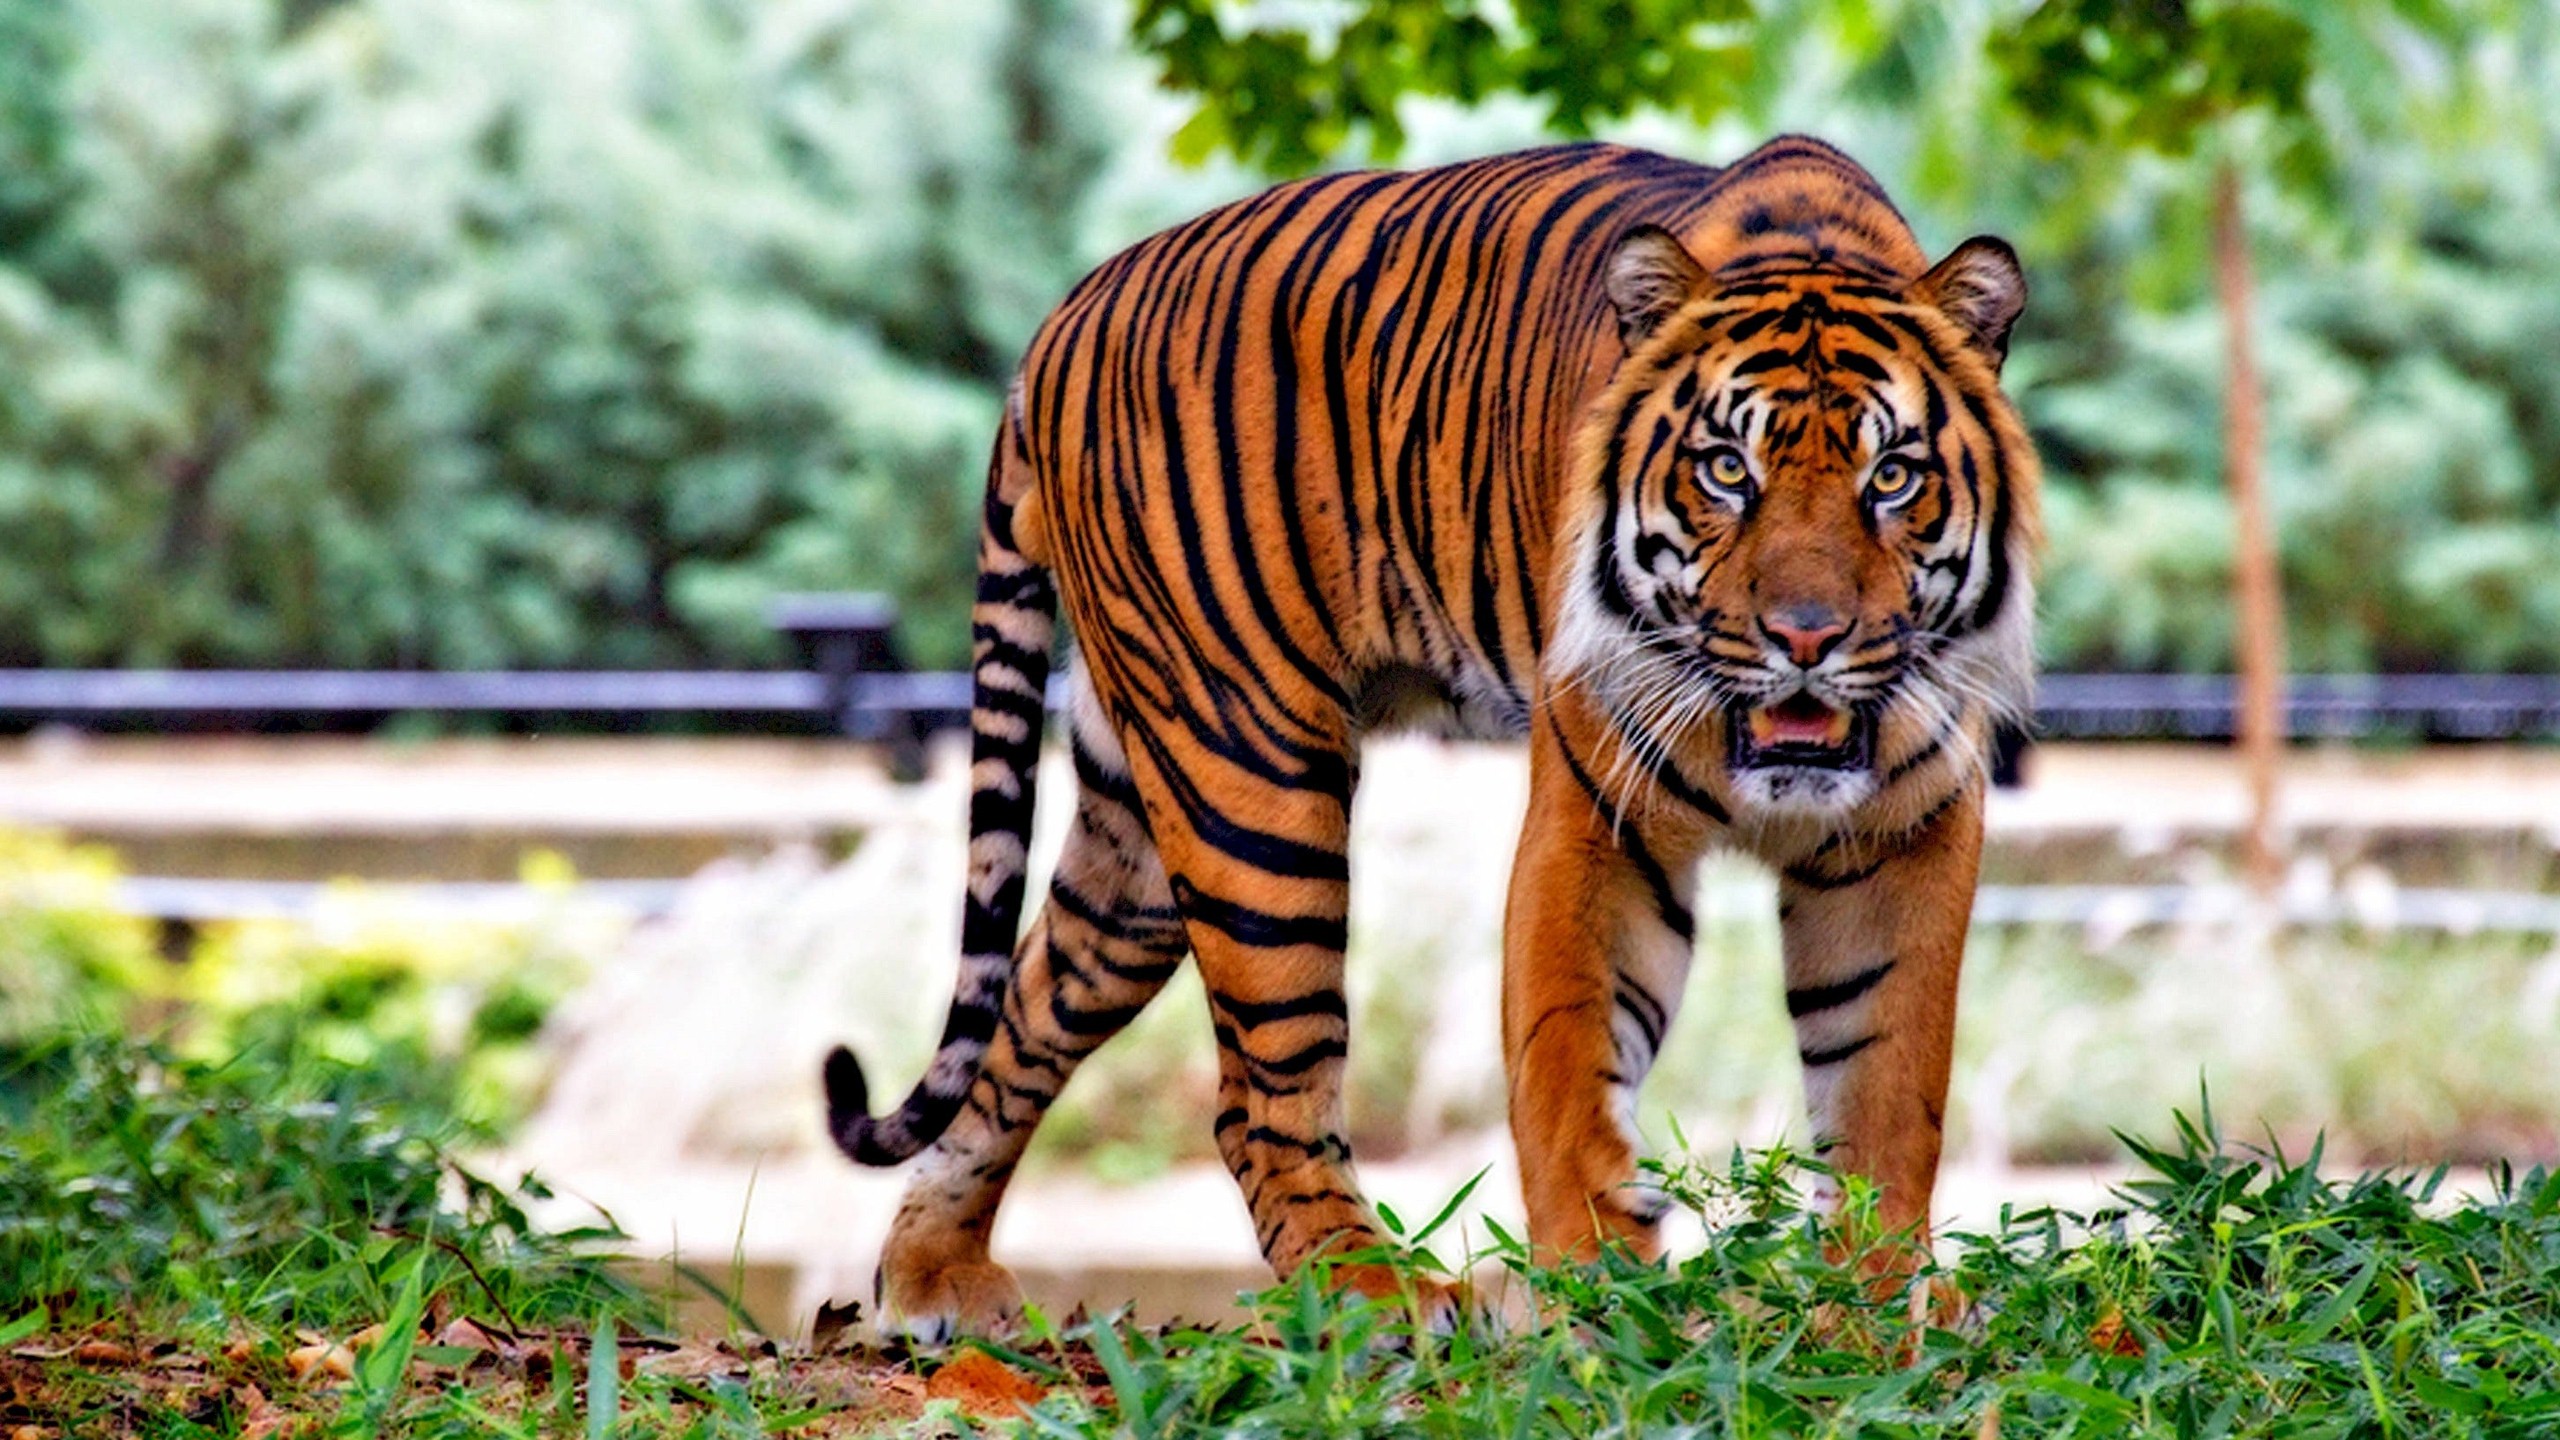 Tiger Hd Wallpaper - Wildlife Sanctuary In Telangana - HD Wallpaper 